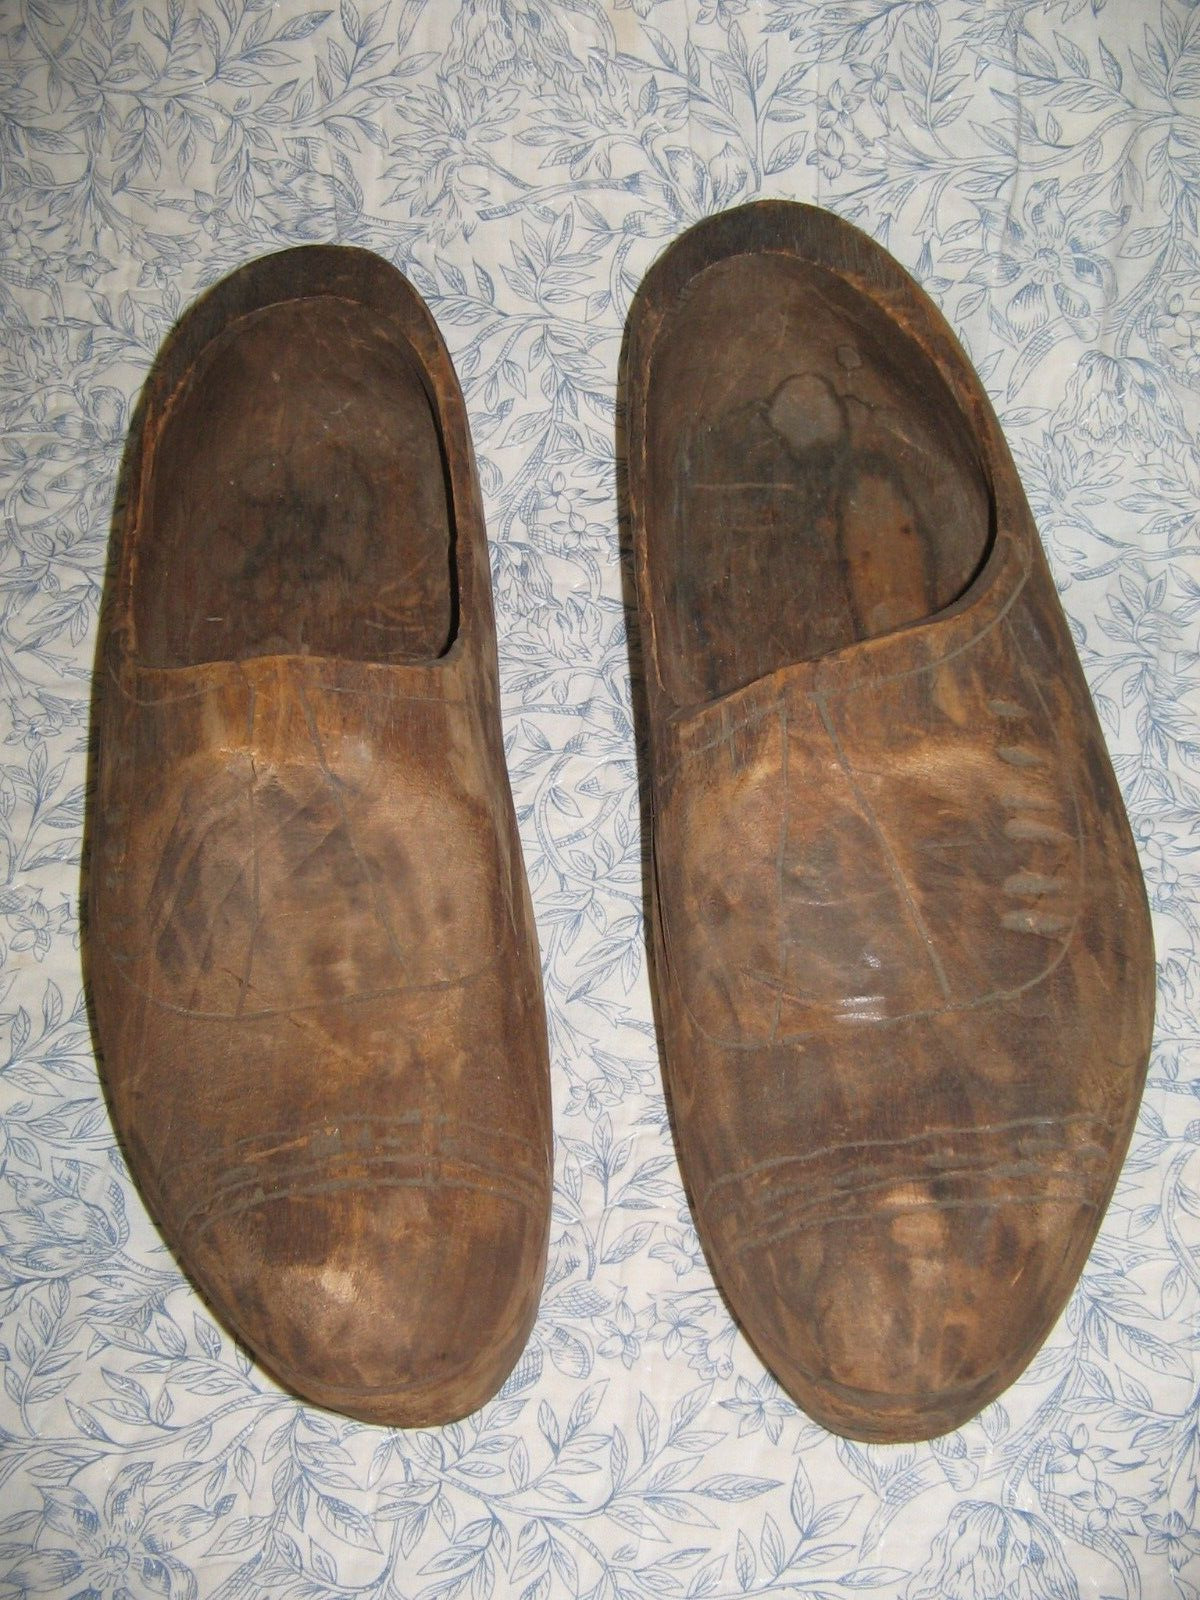 Antique Vintage Pair Wooden Shoes Clogs Carved Primitive Folk Art Decorative